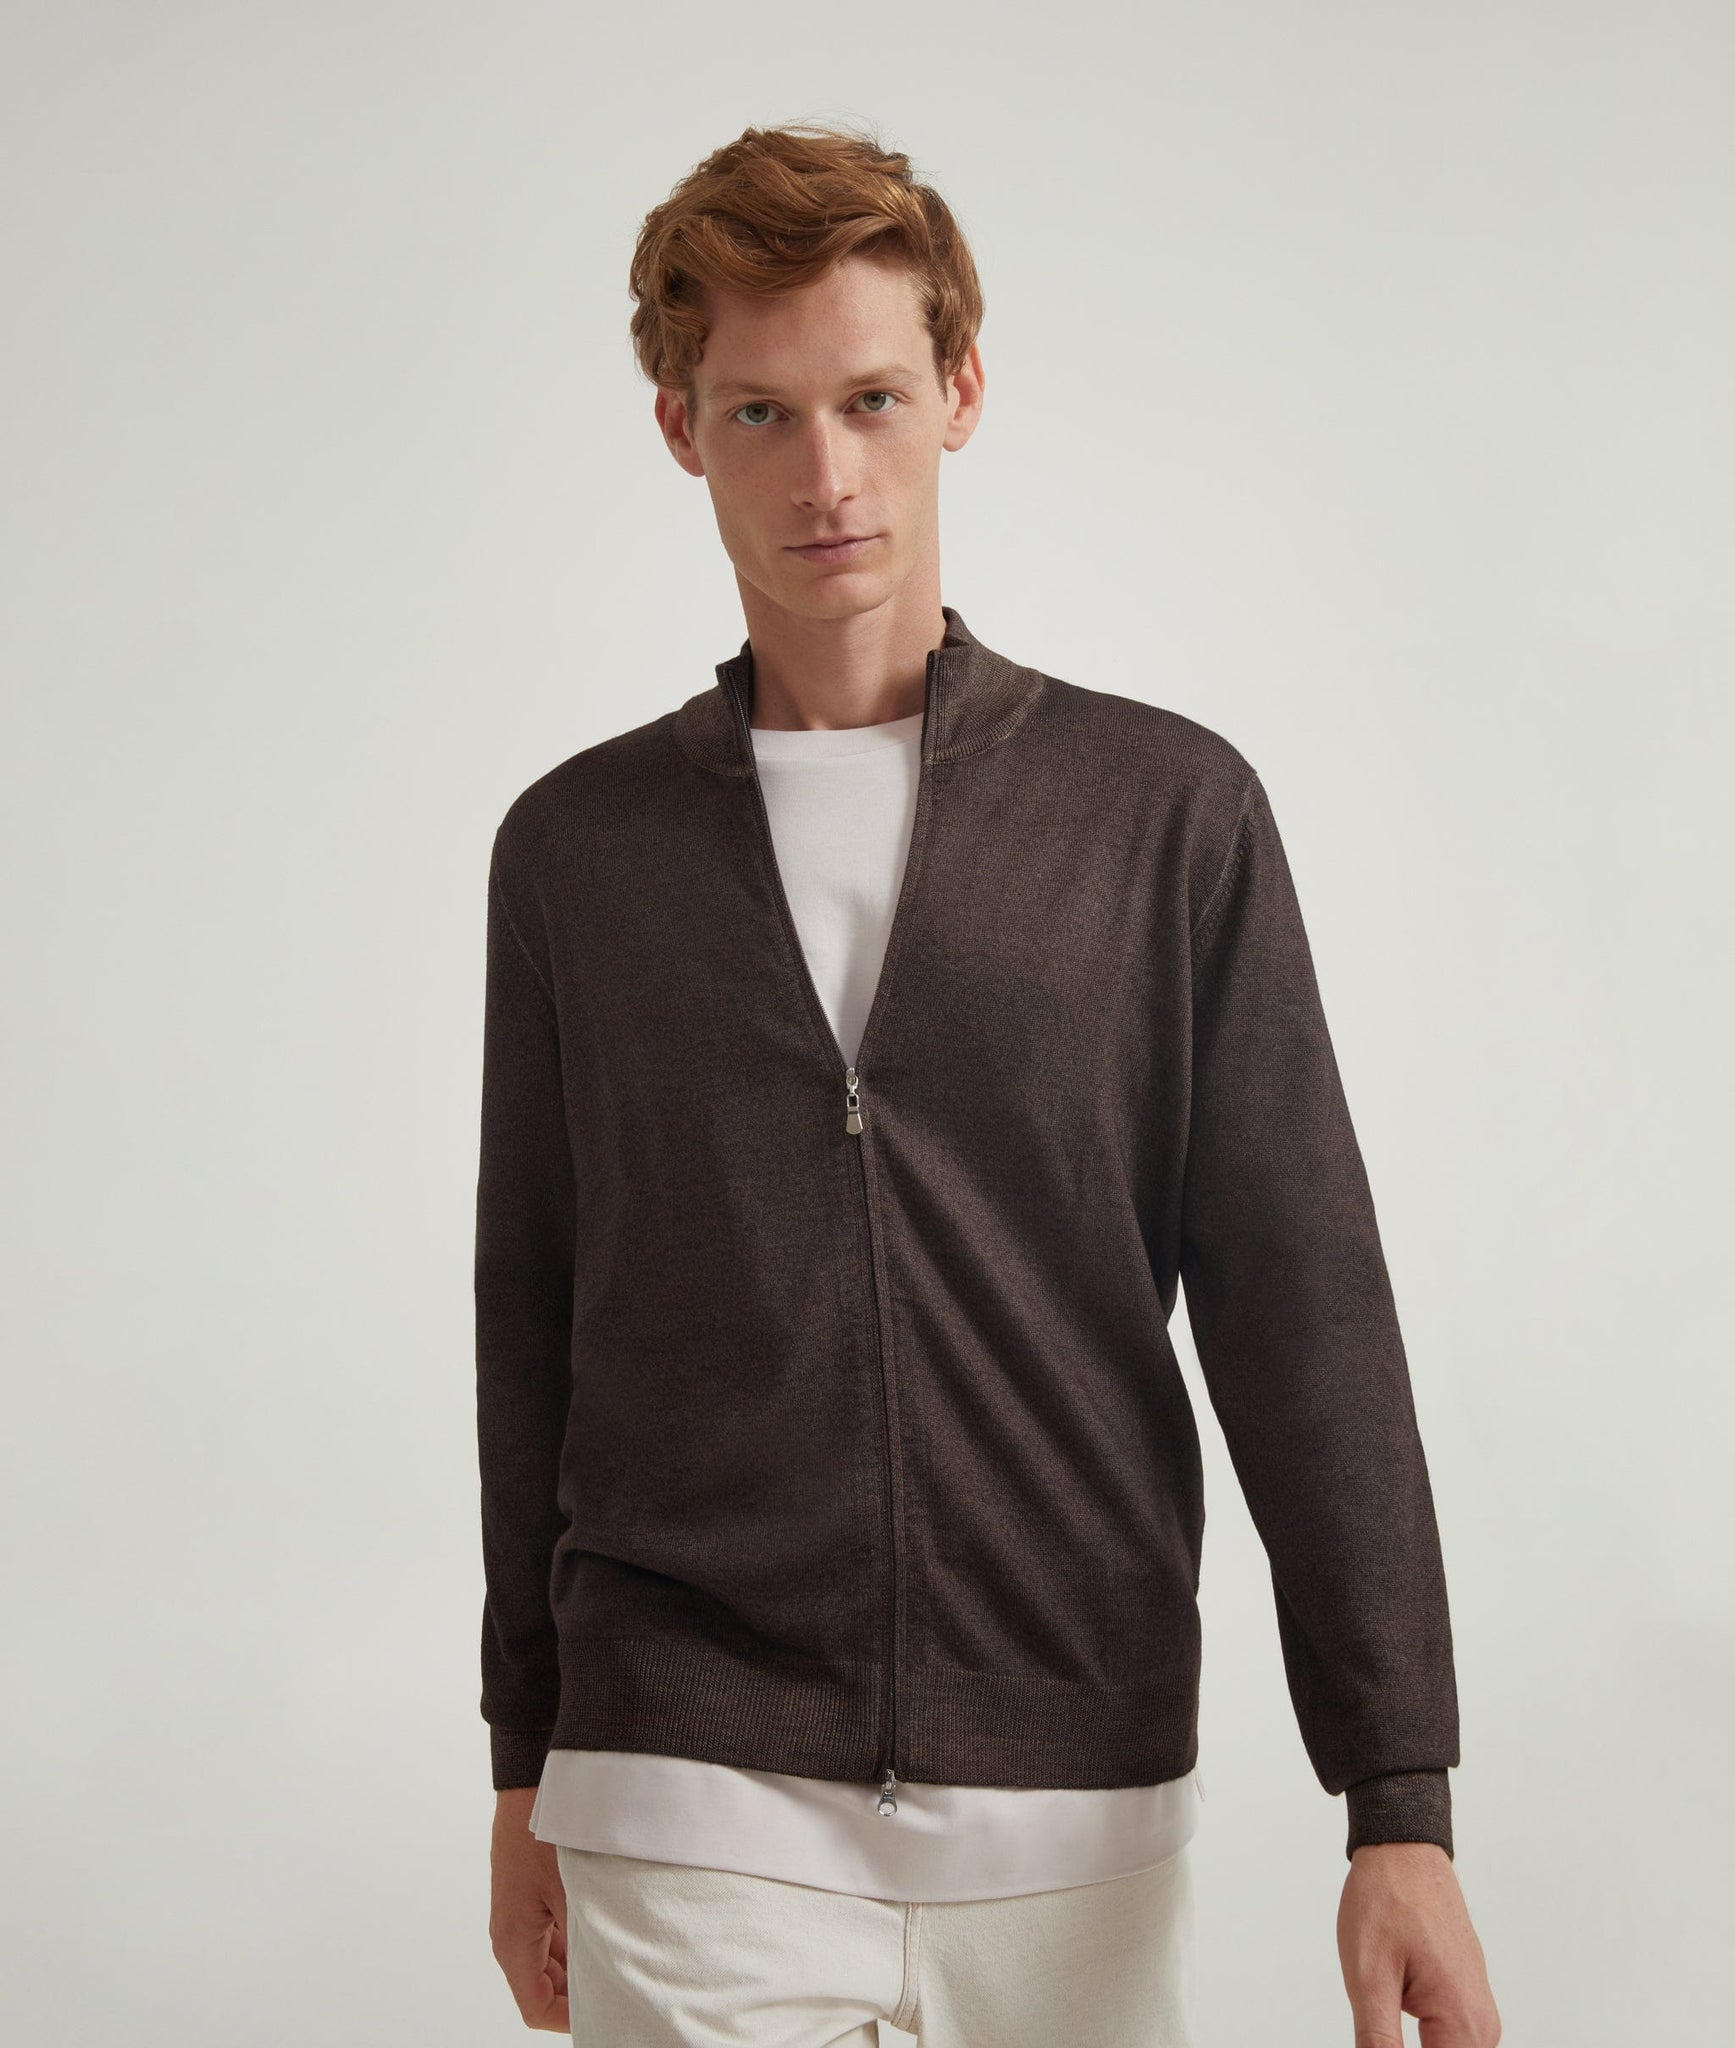 Zip-Up Sweater in Merino Wool